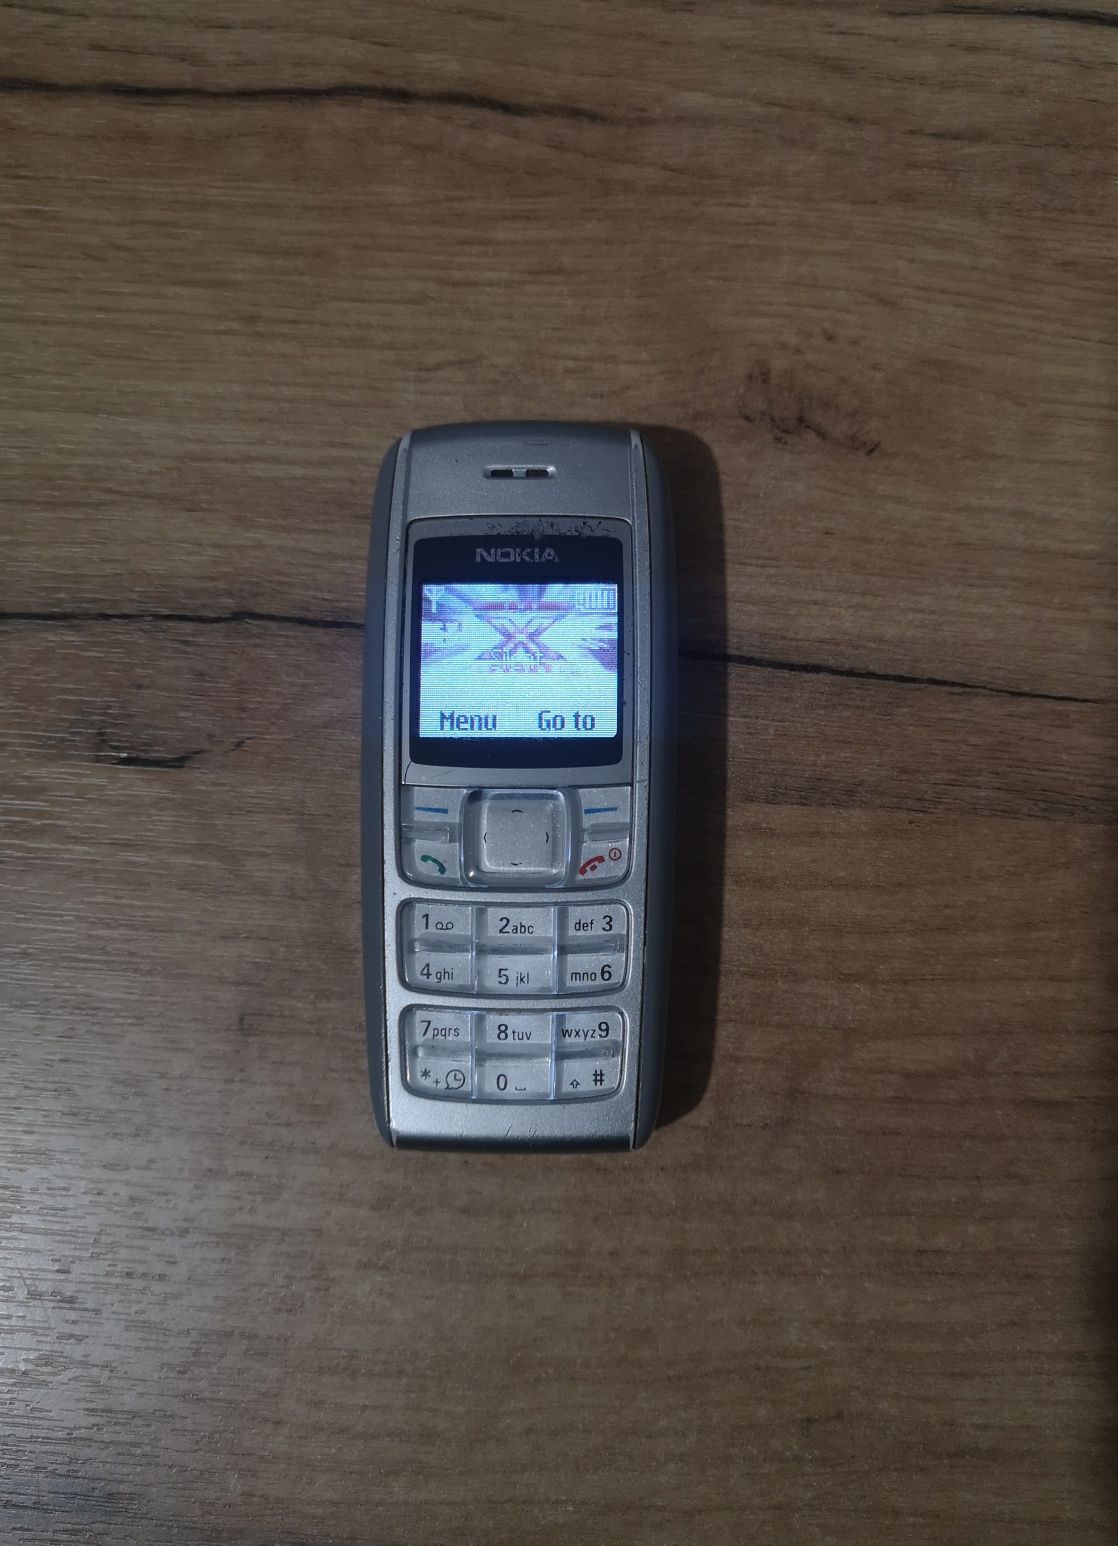 Telefon Nokia 1600 sprawny menu angielskie, niemieckie, francuskie